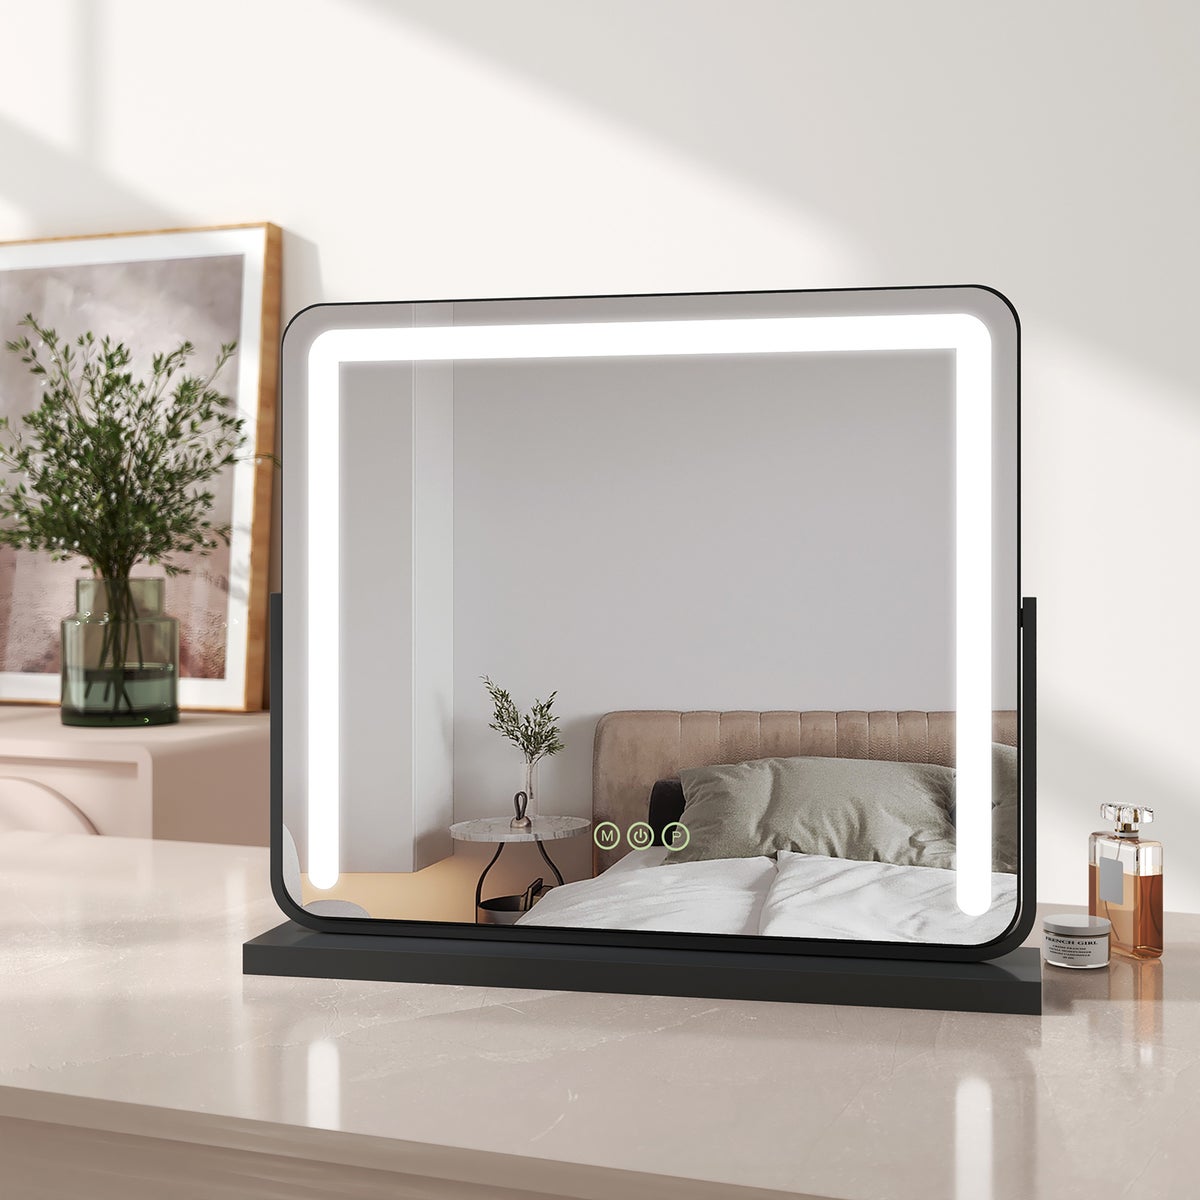 EMKE Schminkspiegel mit Beleuchtung LED Kosmetikspiegel Drehbar Make Up Spiegel mit Touchschalter, 3 Lichtfarben Dimmbar und Memory-Funktion, Schwarz, 60x51,6cm